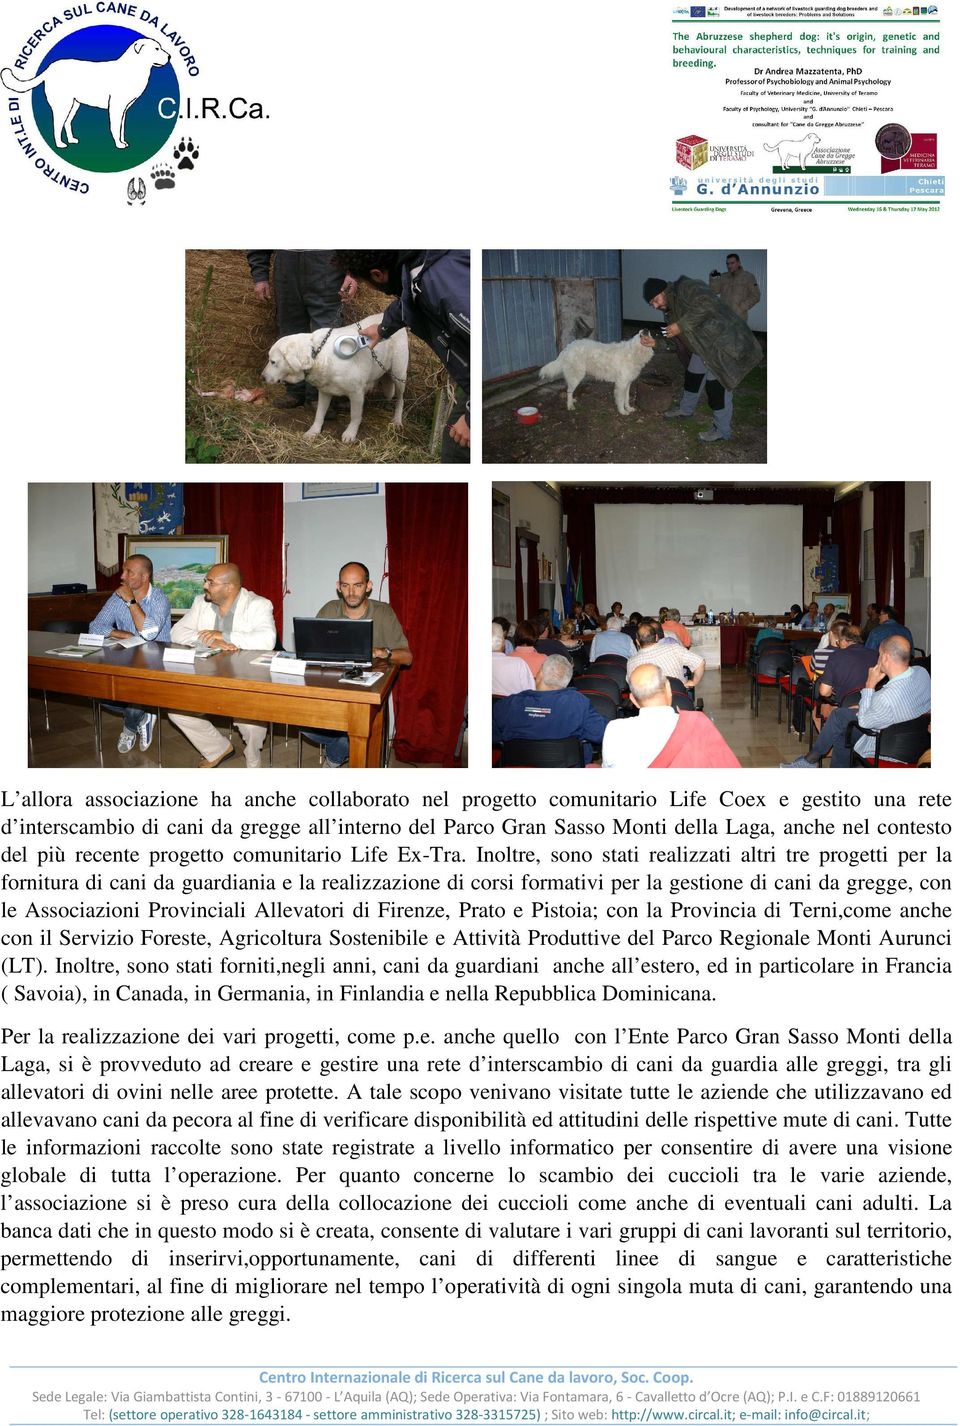 Inoltre, sono stati realizzati altri tre progetti per la fornitura di cani da guardiania e la realizzazione di corsi formativi per la gestione di cani da gregge, con le Associazioni Provinciali